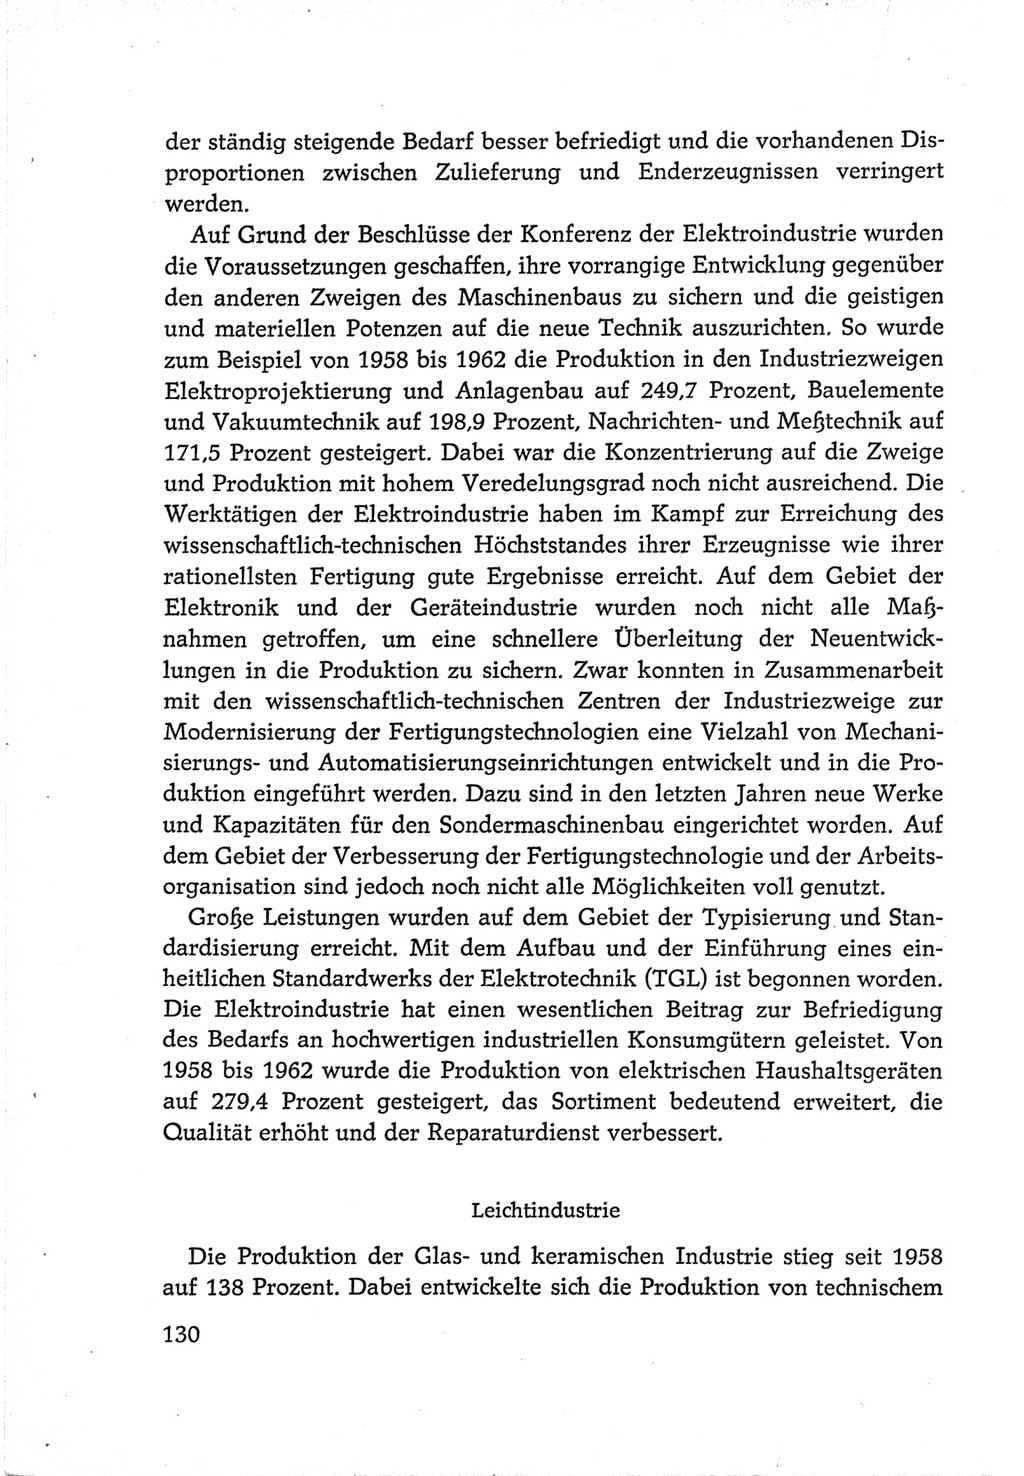 Protokoll der Verhandlungen des Ⅵ. Parteitages der Sozialistischen Einheitspartei Deutschlands (SED) [Deutsche Demokratische Republik (DDR)] 1963, Band Ⅳ, Seite 130 (Prot. Verh. Ⅵ. PT SED DDR 1963, Bd. Ⅳ, S. 130)